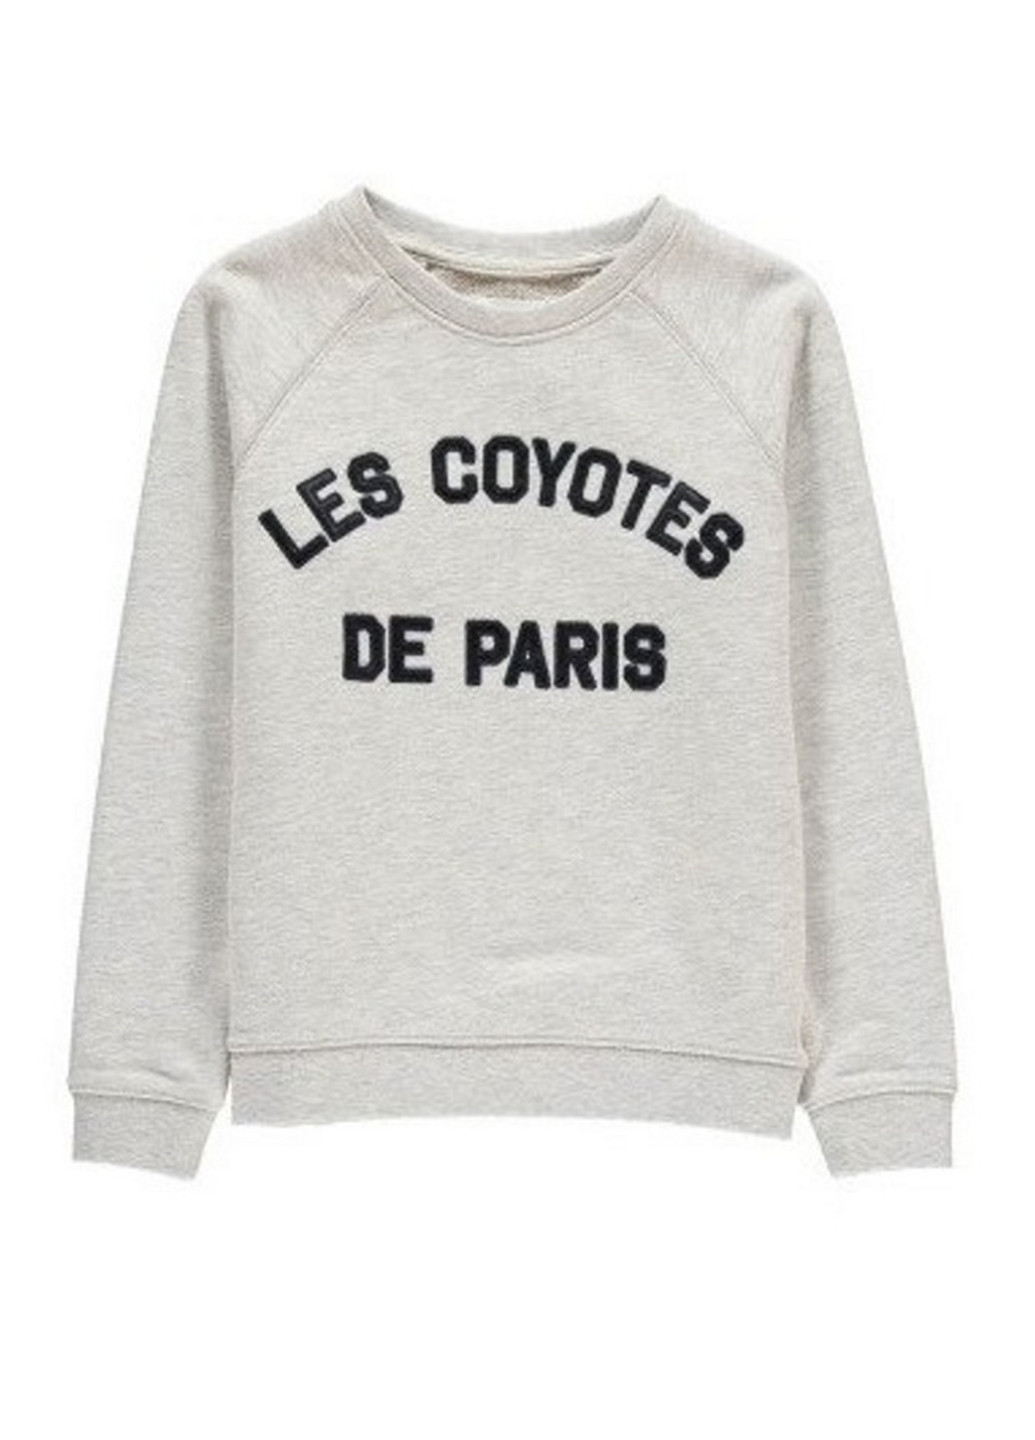 Les Coyotes De Paris свитшот надпись светло-серый спортивный хлопок, трикотаж